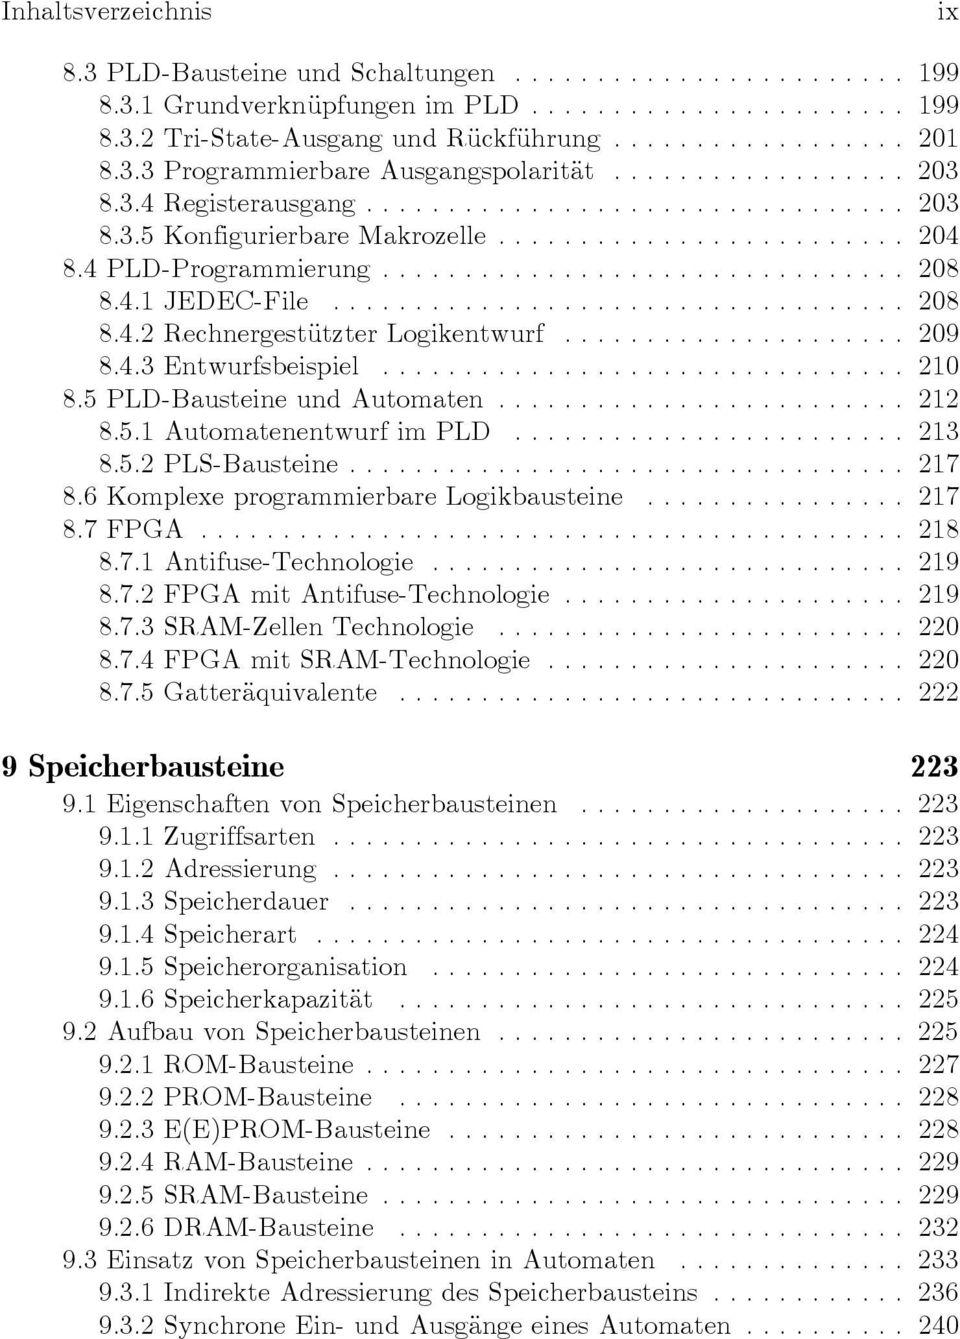 5 PLD-Bausteine und Automaten... 212 8.5.1 Automatenentwurf im PLD... 213 8.5.2 PLS-Bausteine... 217 8.6 Komplexe programmierbare Logikbausteine... 217 8.7 FPGA... 218 8.7.1 Antifuse-Technologie.